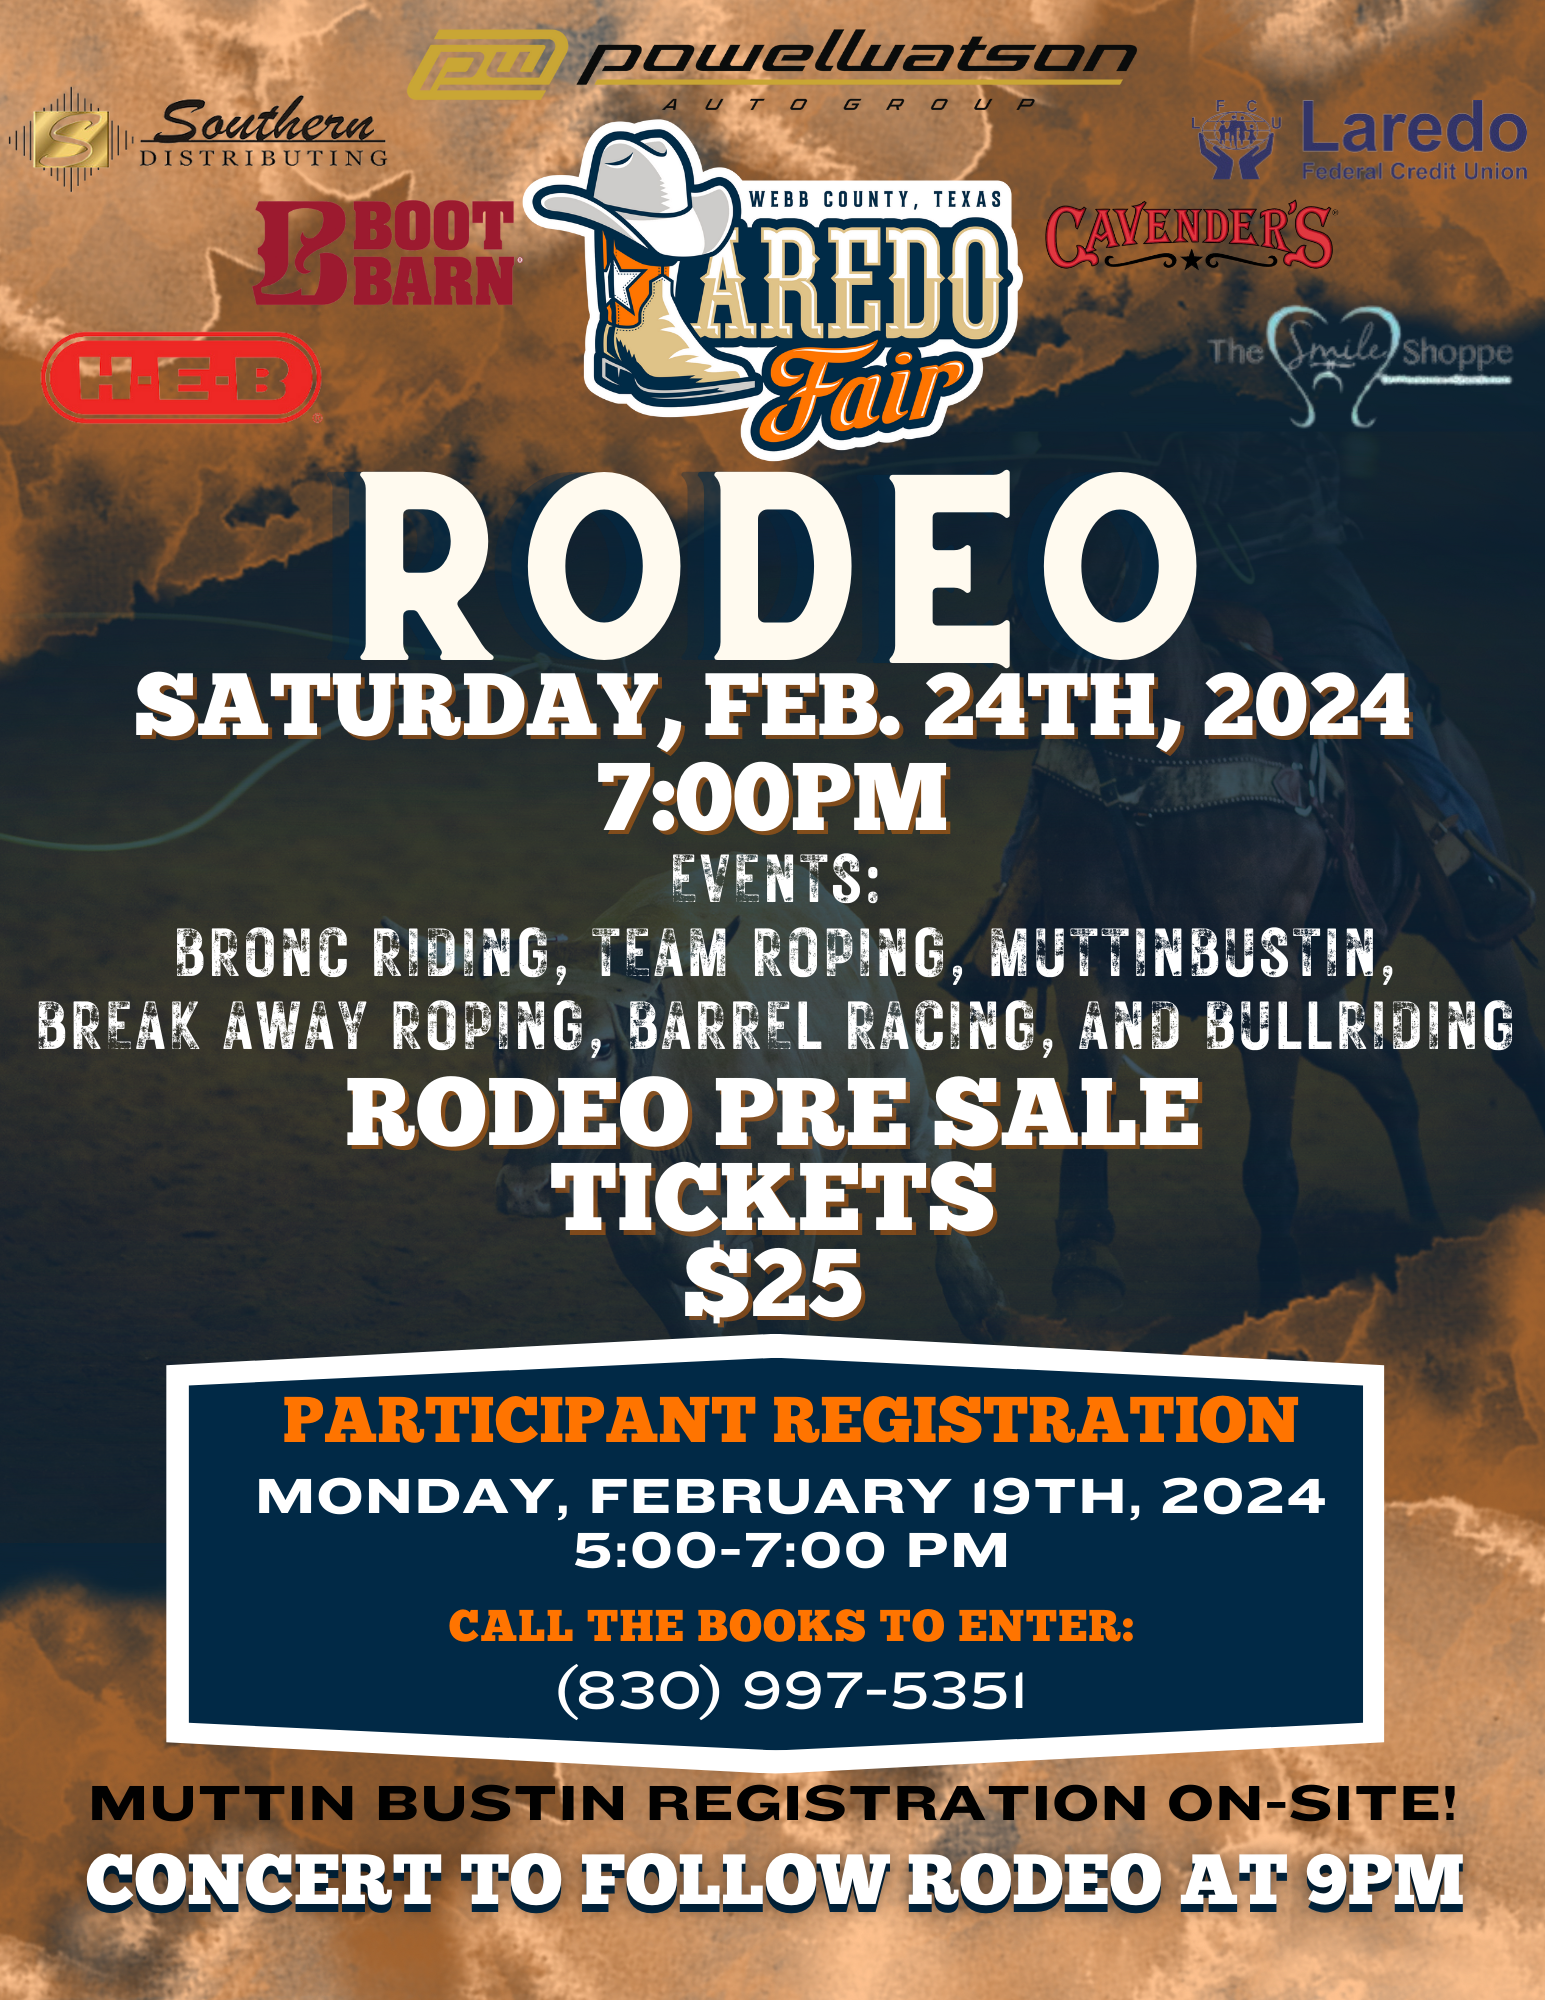 Rodeo Night- Saturday, February 24